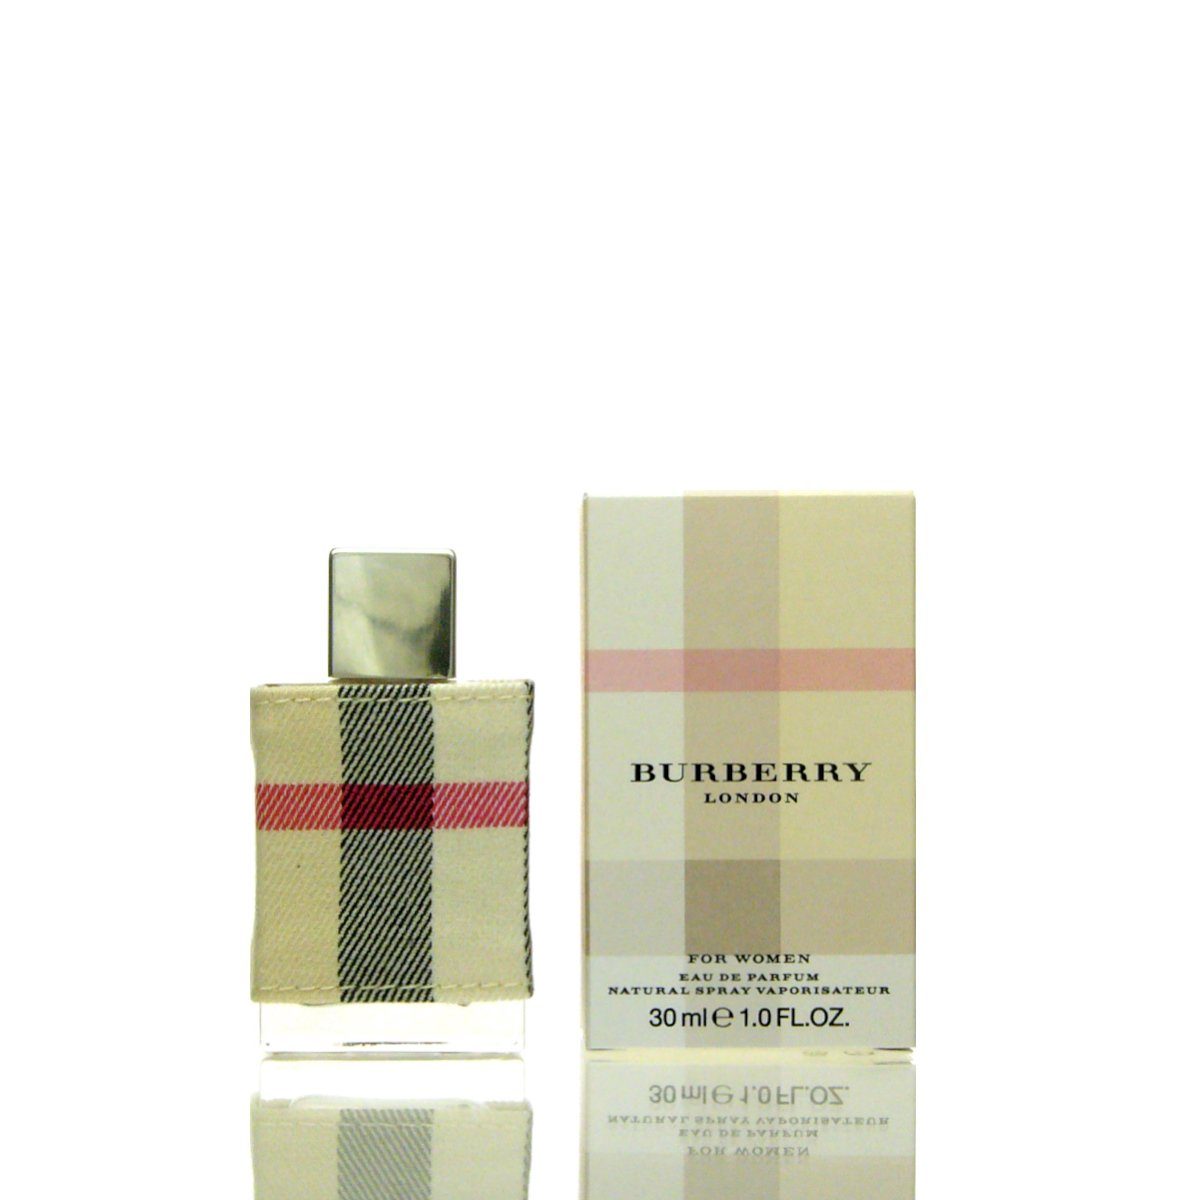 BURBERRY Eau de Parfum Burberry London for Woman Eau de Parfum 30 ml